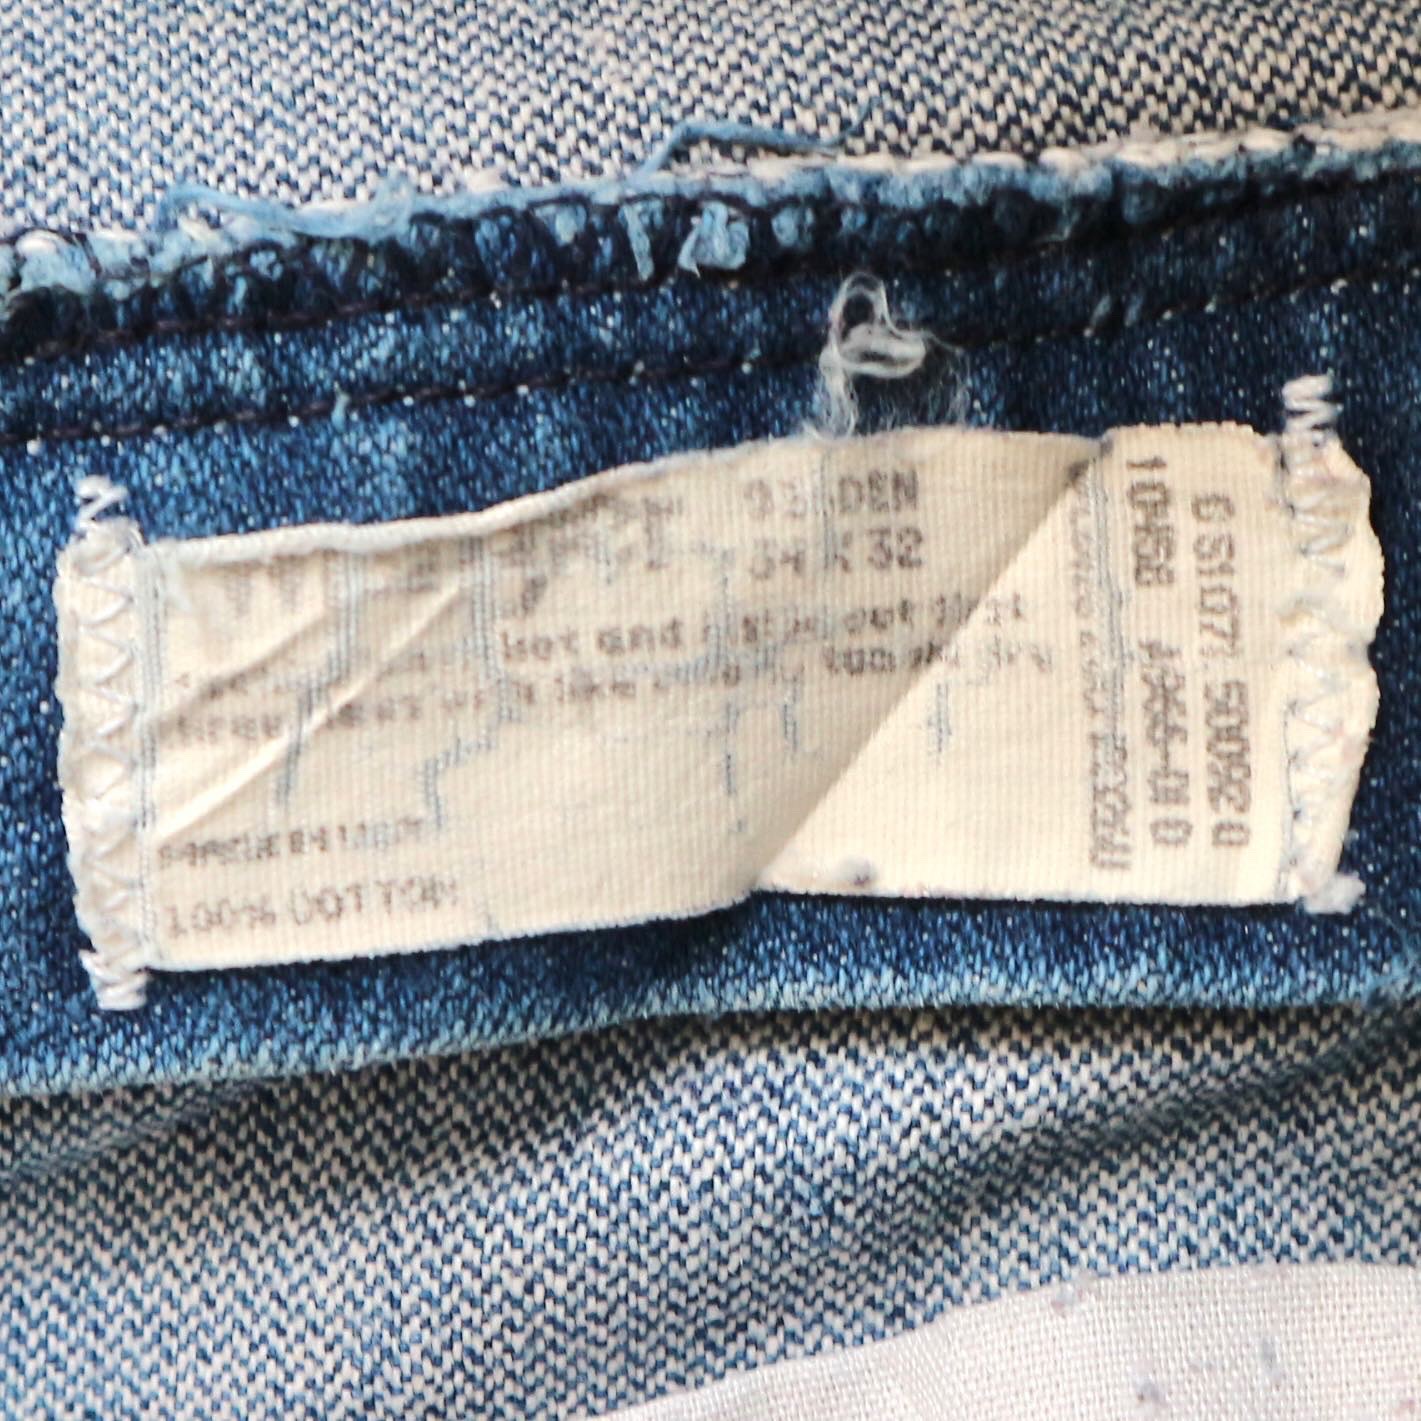 Wrangler Jeans Size 33 denimister